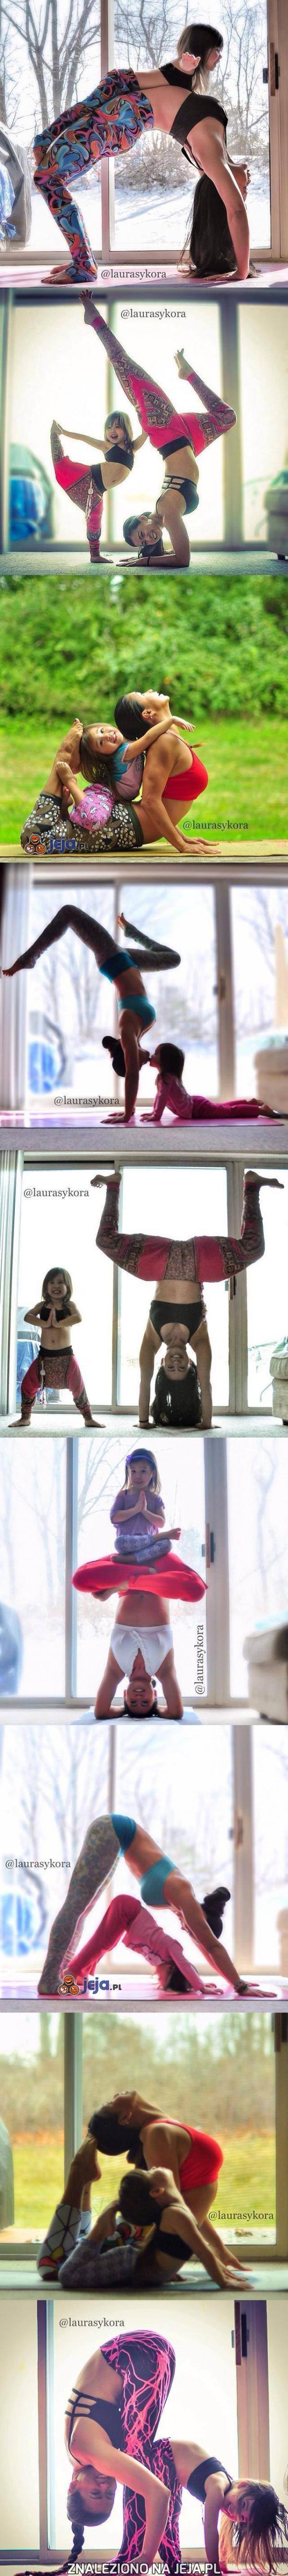 Matka i córka ćwiczą jogę